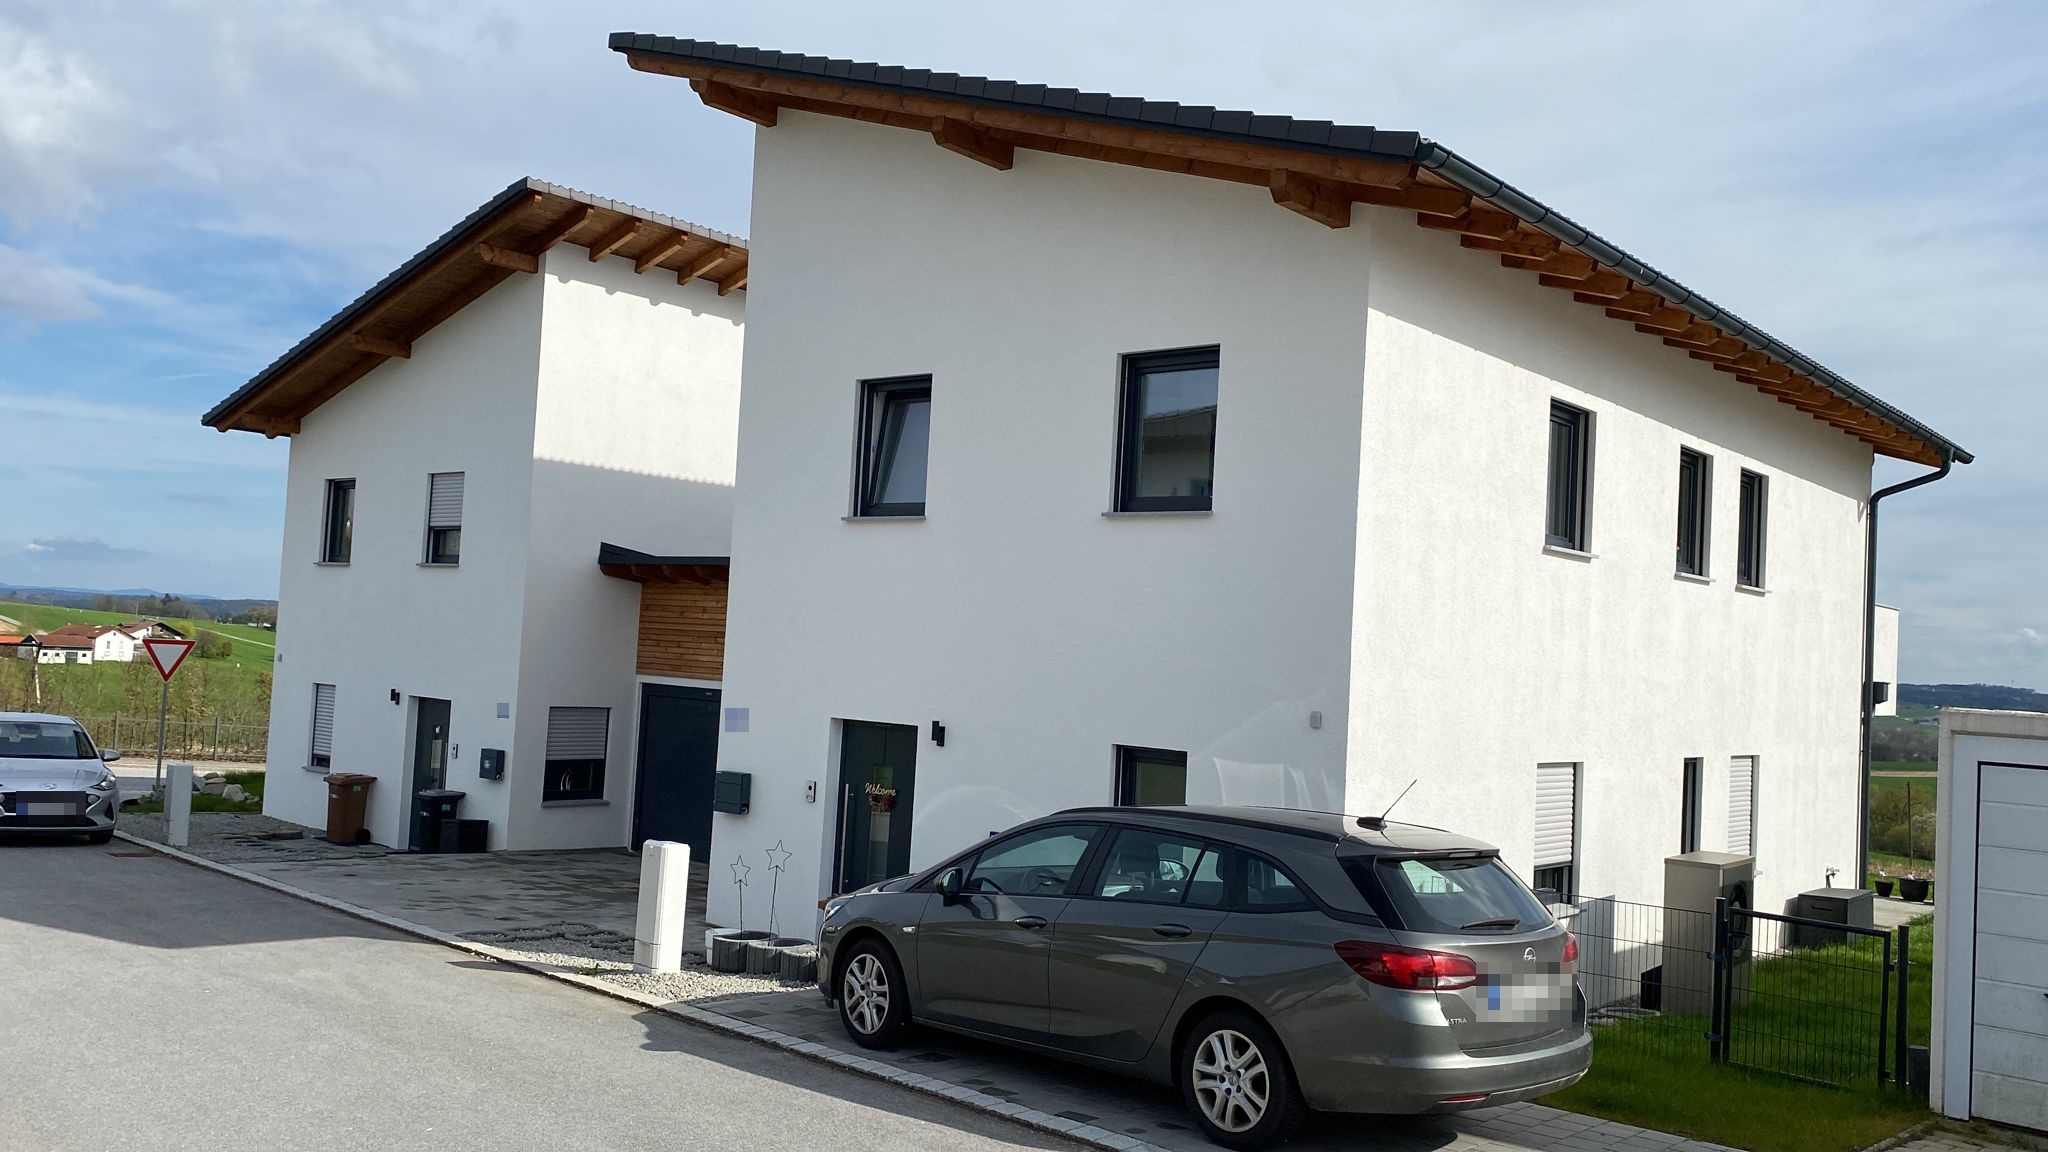 Haus in Vilshofen<br><br>Verkauft in 3 Monaten